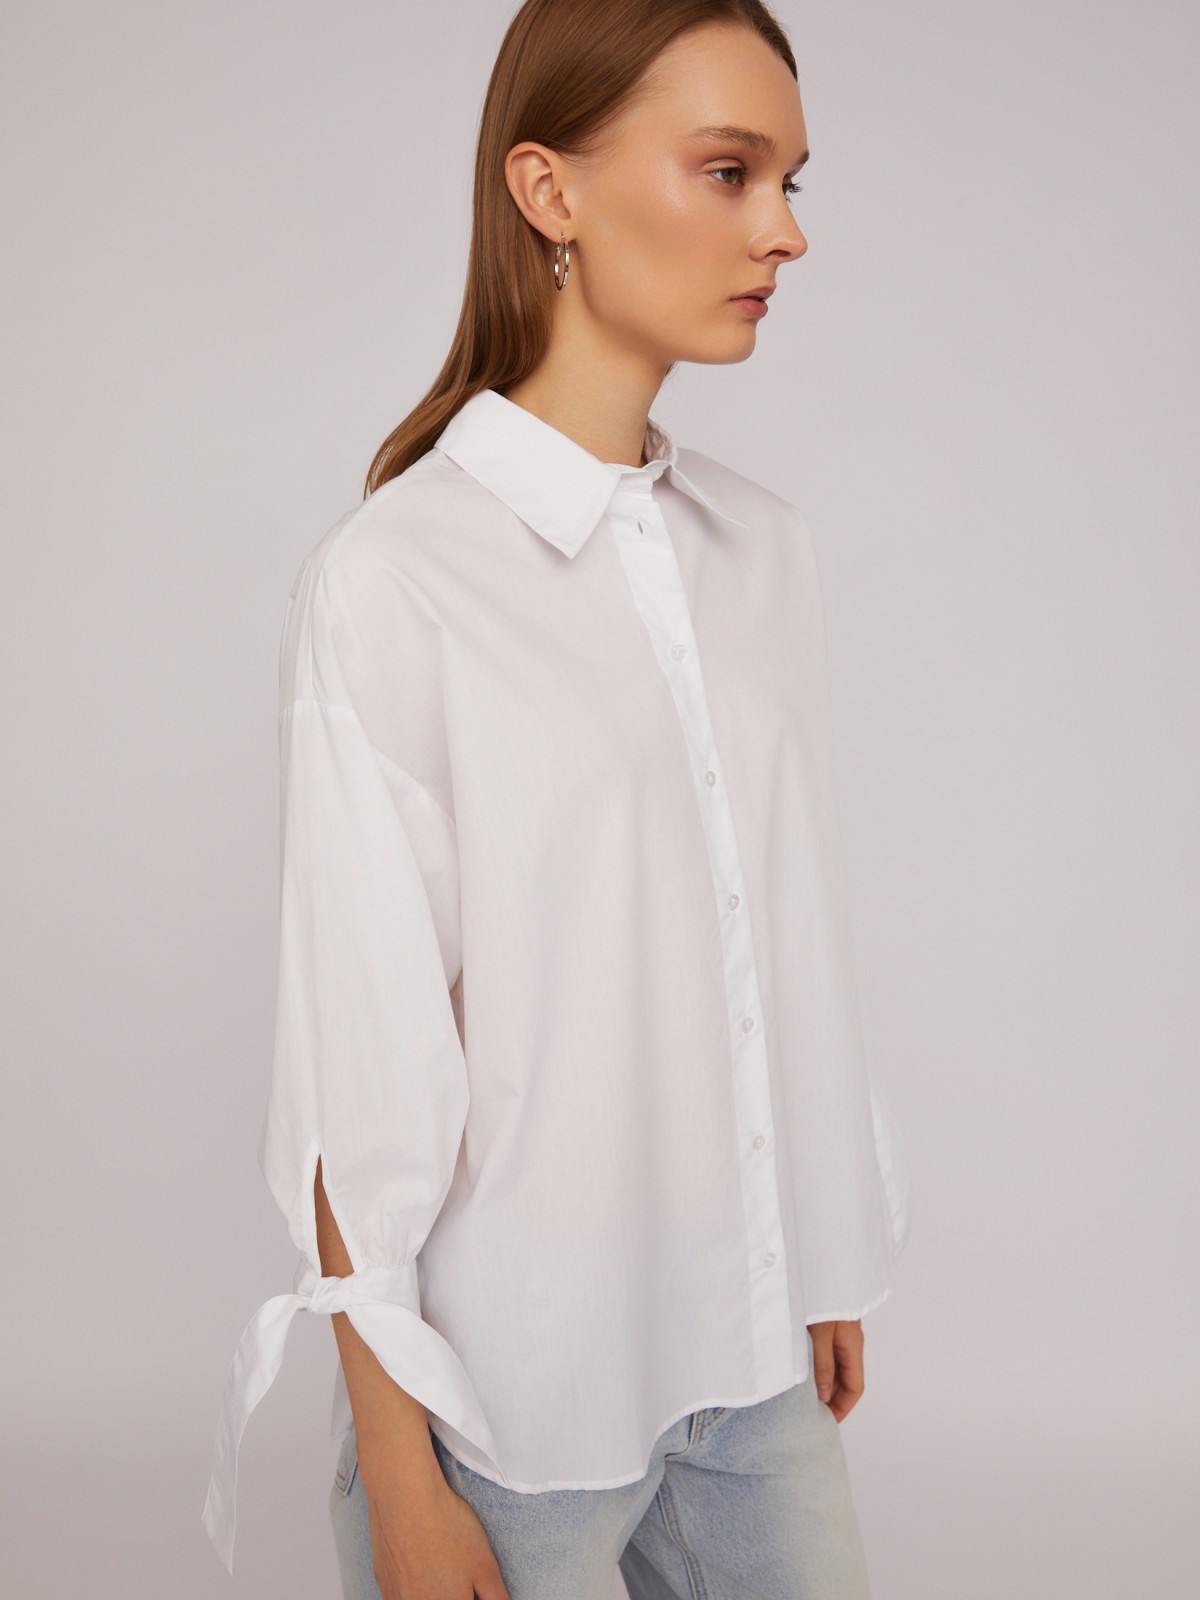 Рубашка из хлопка оверсайз силуэта с акцентными манжетами zolla 024211159033, цвет белый, размер XS - фото 4